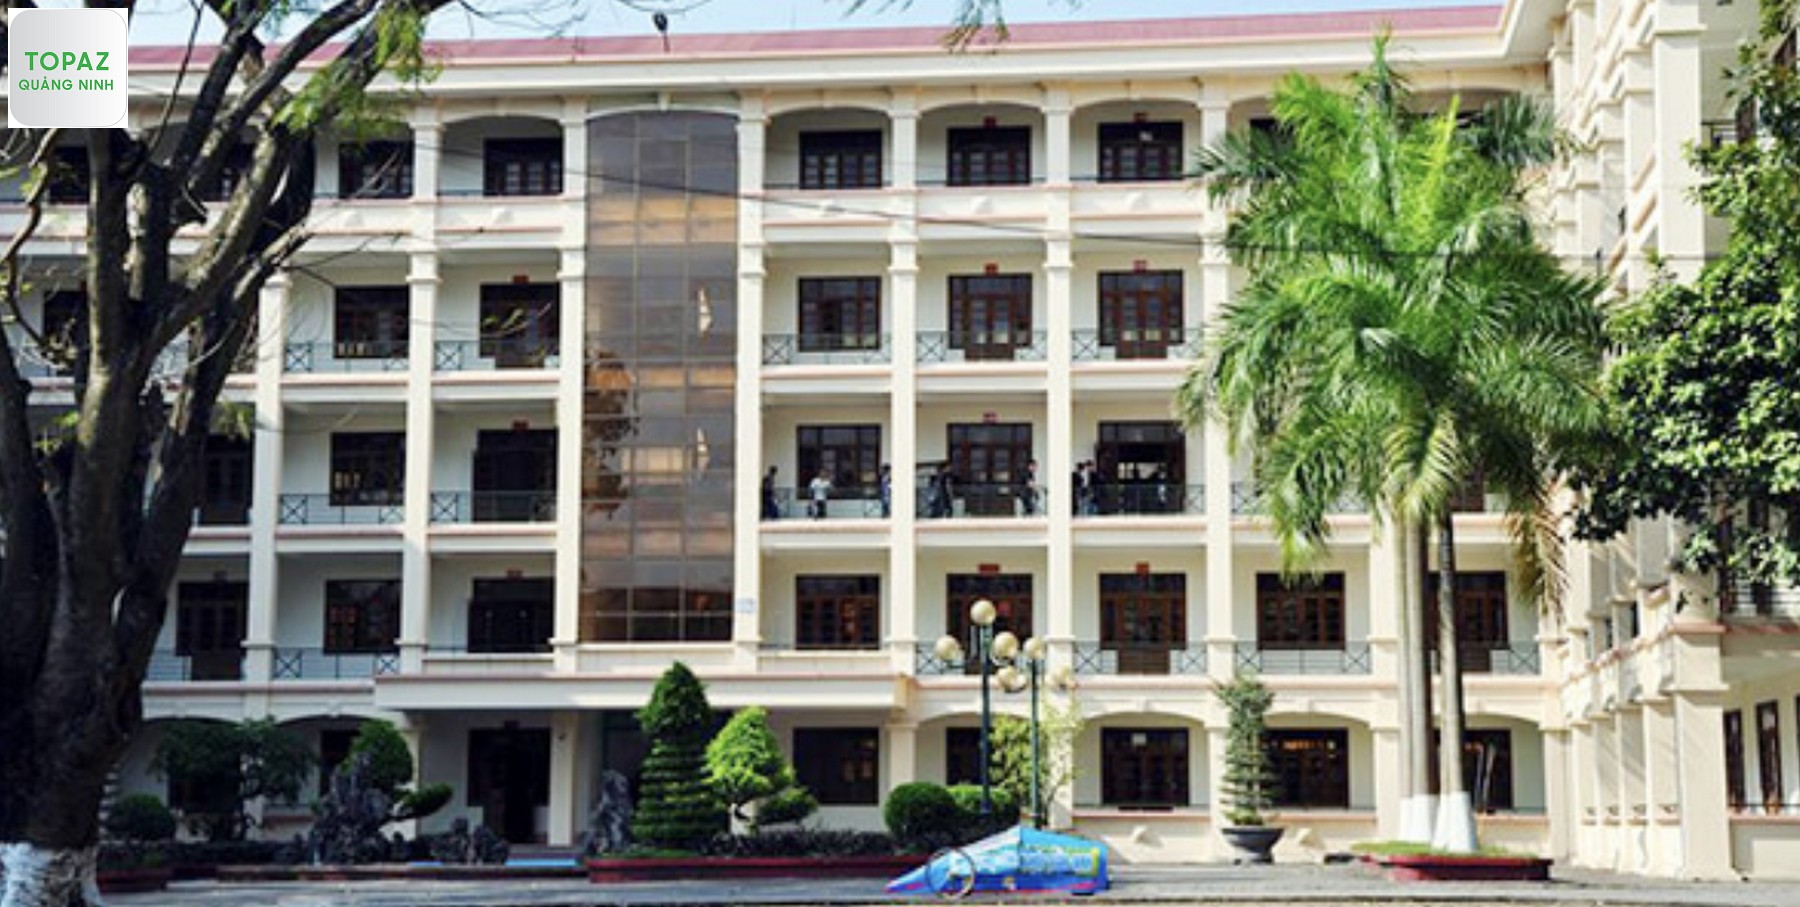 Mức học phí của trường Đại học Công nghiệp Quảng Ninh 